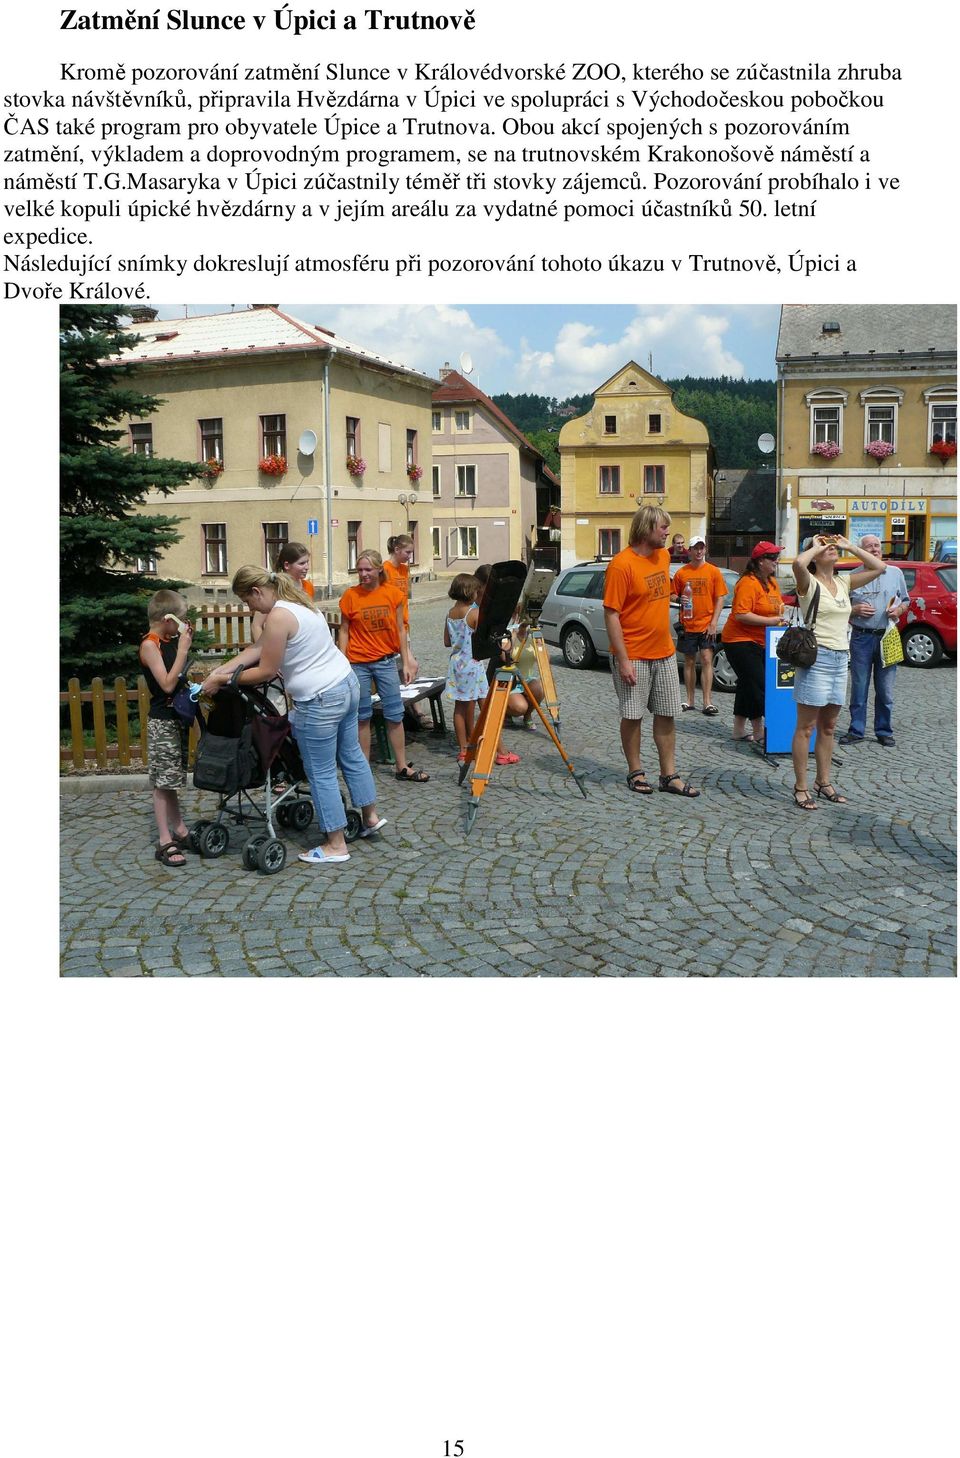 Obou akcí spojených s pozorováním zatmění, výkladem a doprovodným programem, se na trutnovském Krakonošově náměstí a náměstí T.G.